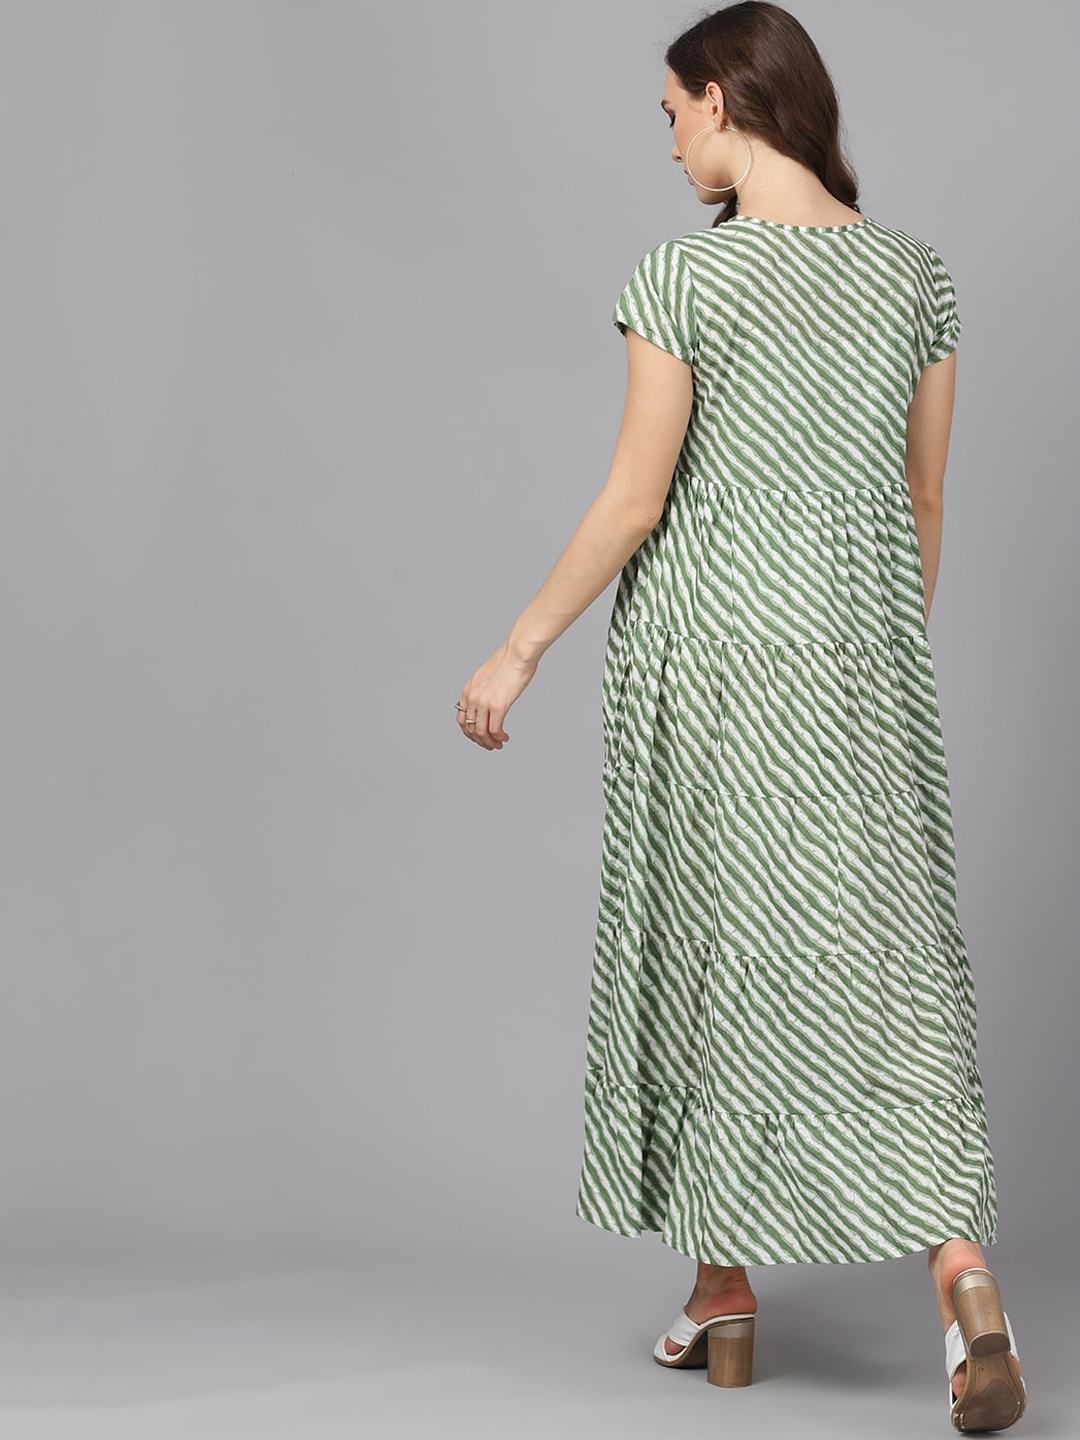 Women's  Green & White Striped Maxi Dress - AKS